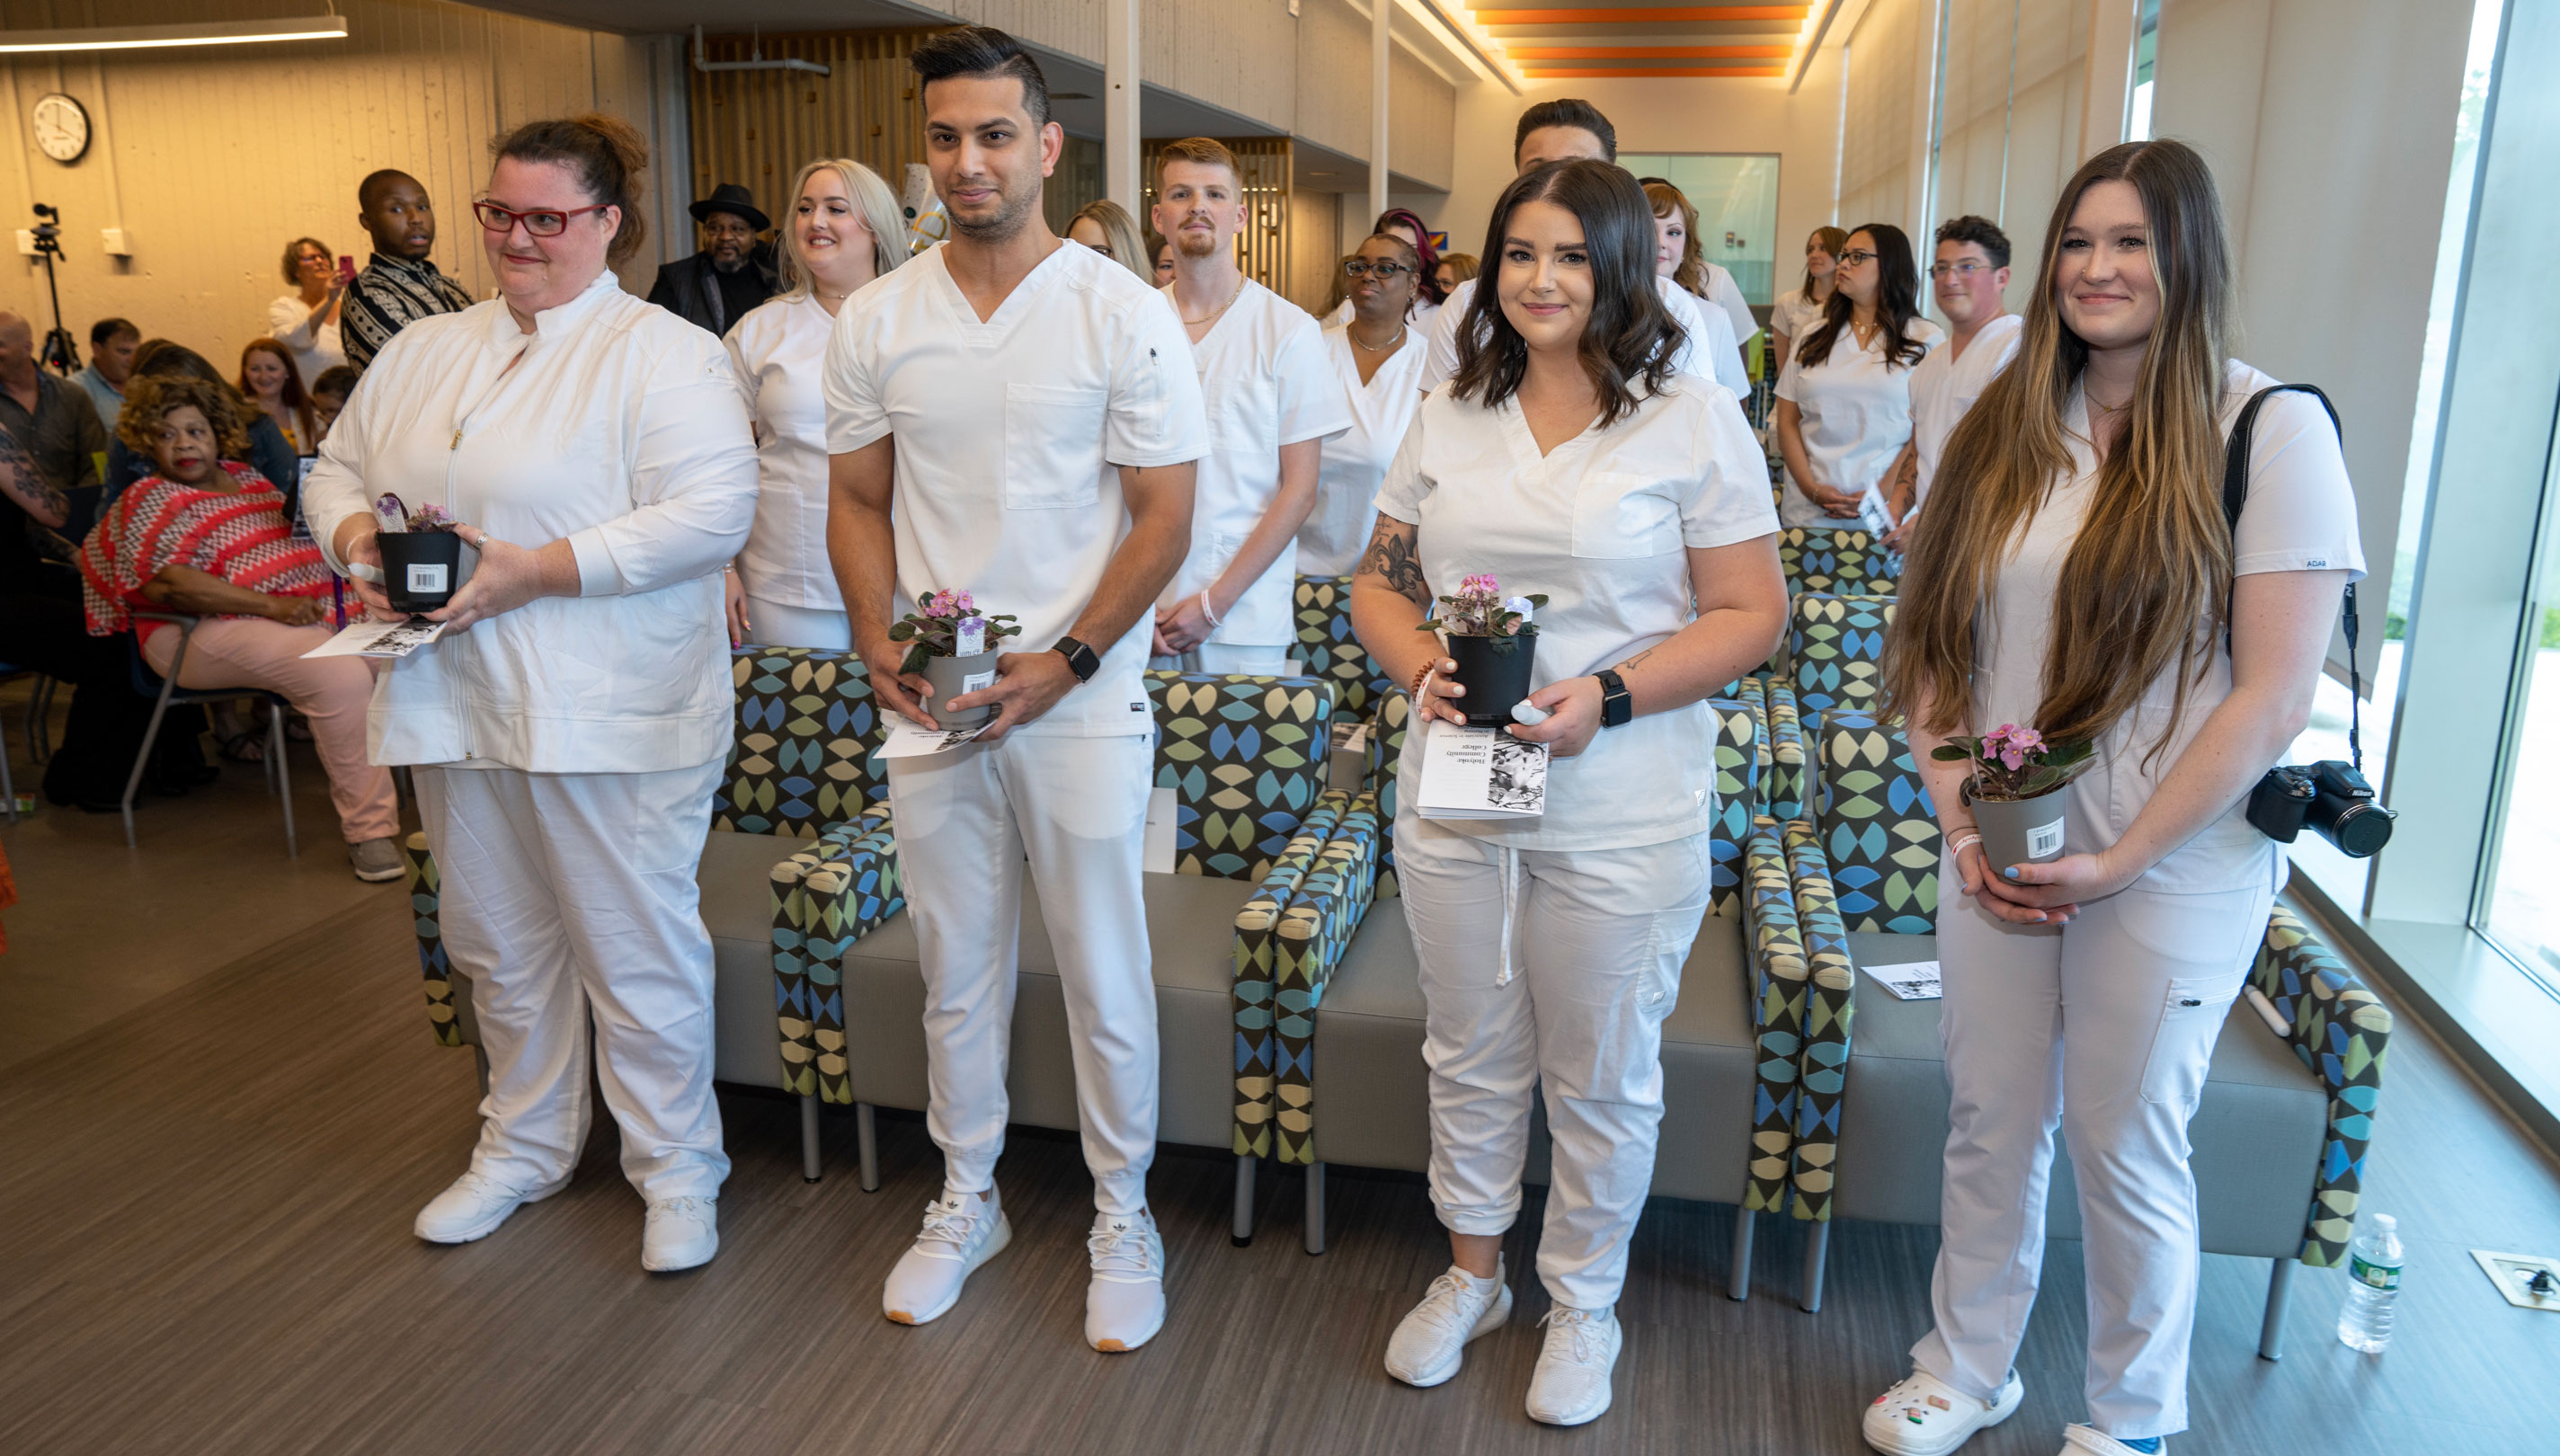 A group of nursing graduates wearing white scrubs